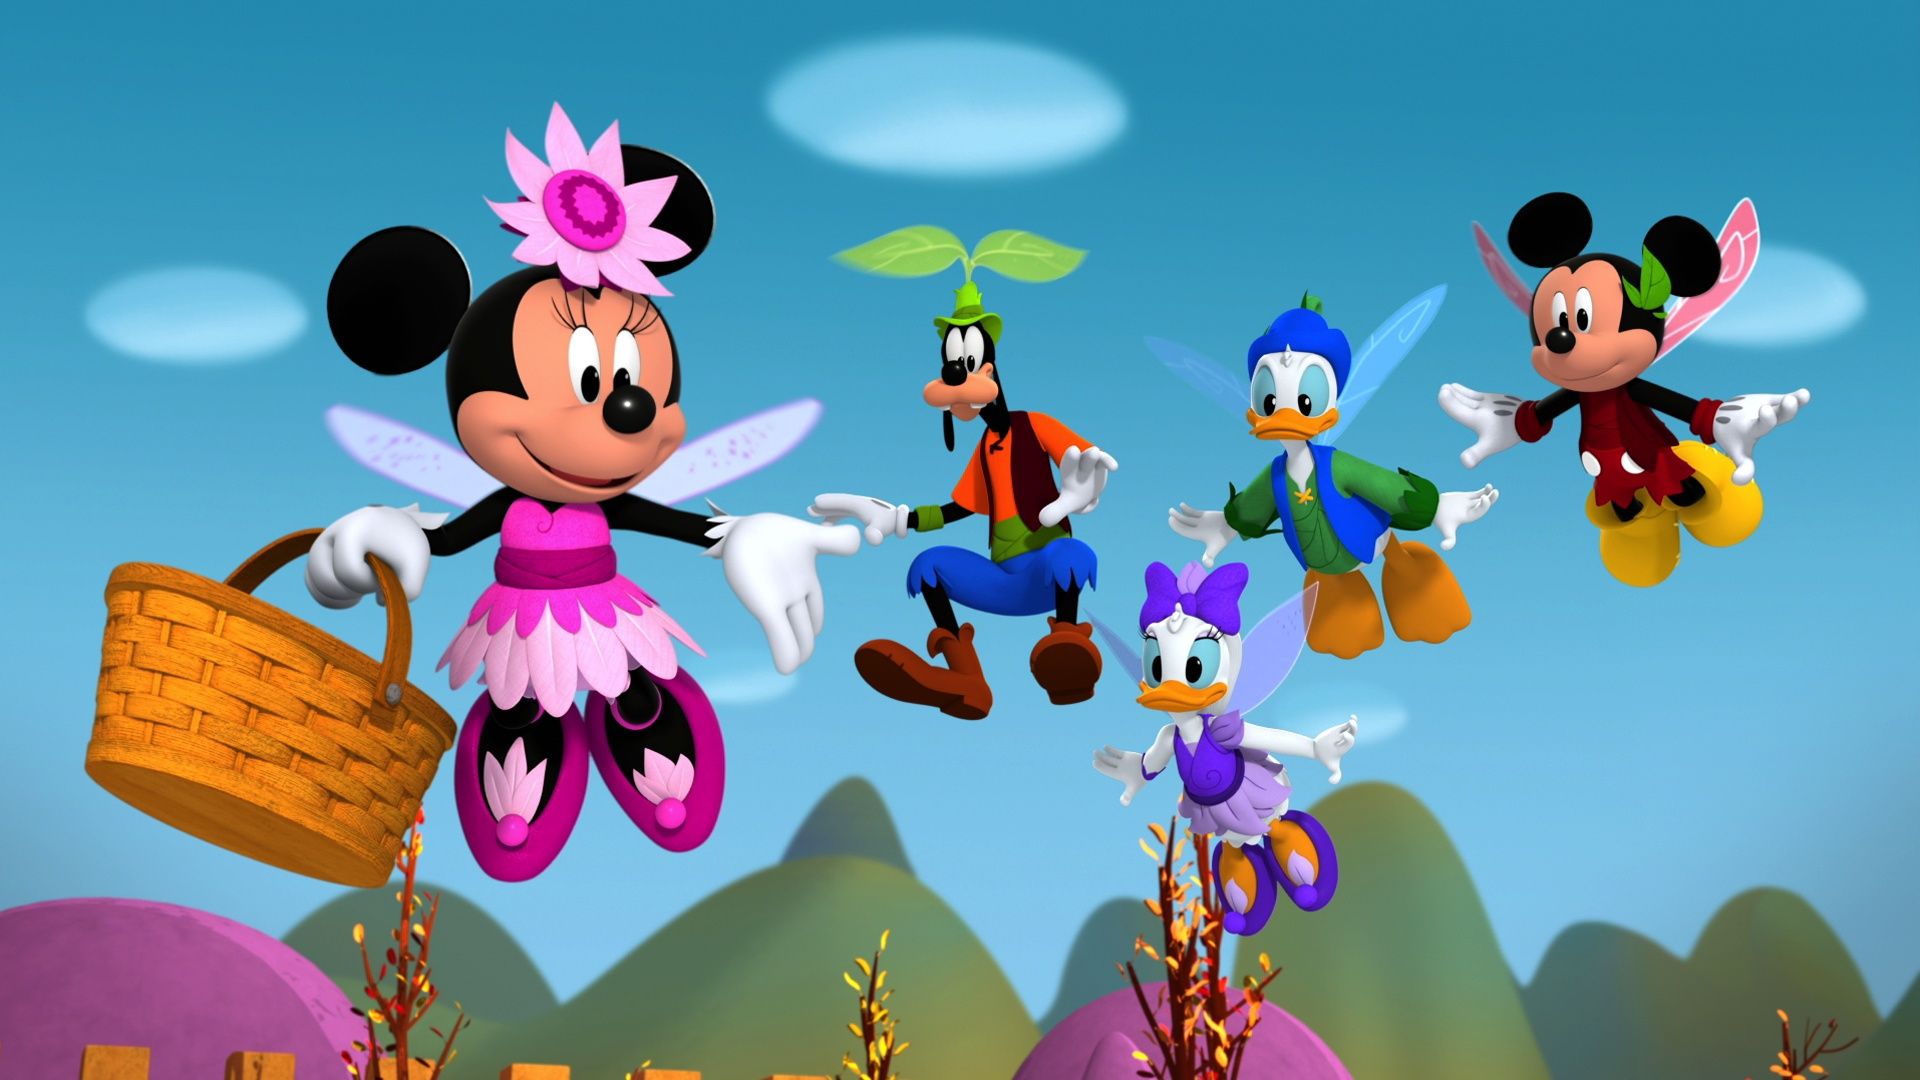 Mickey Mouse Funhouse Season 1 Full Episodes!